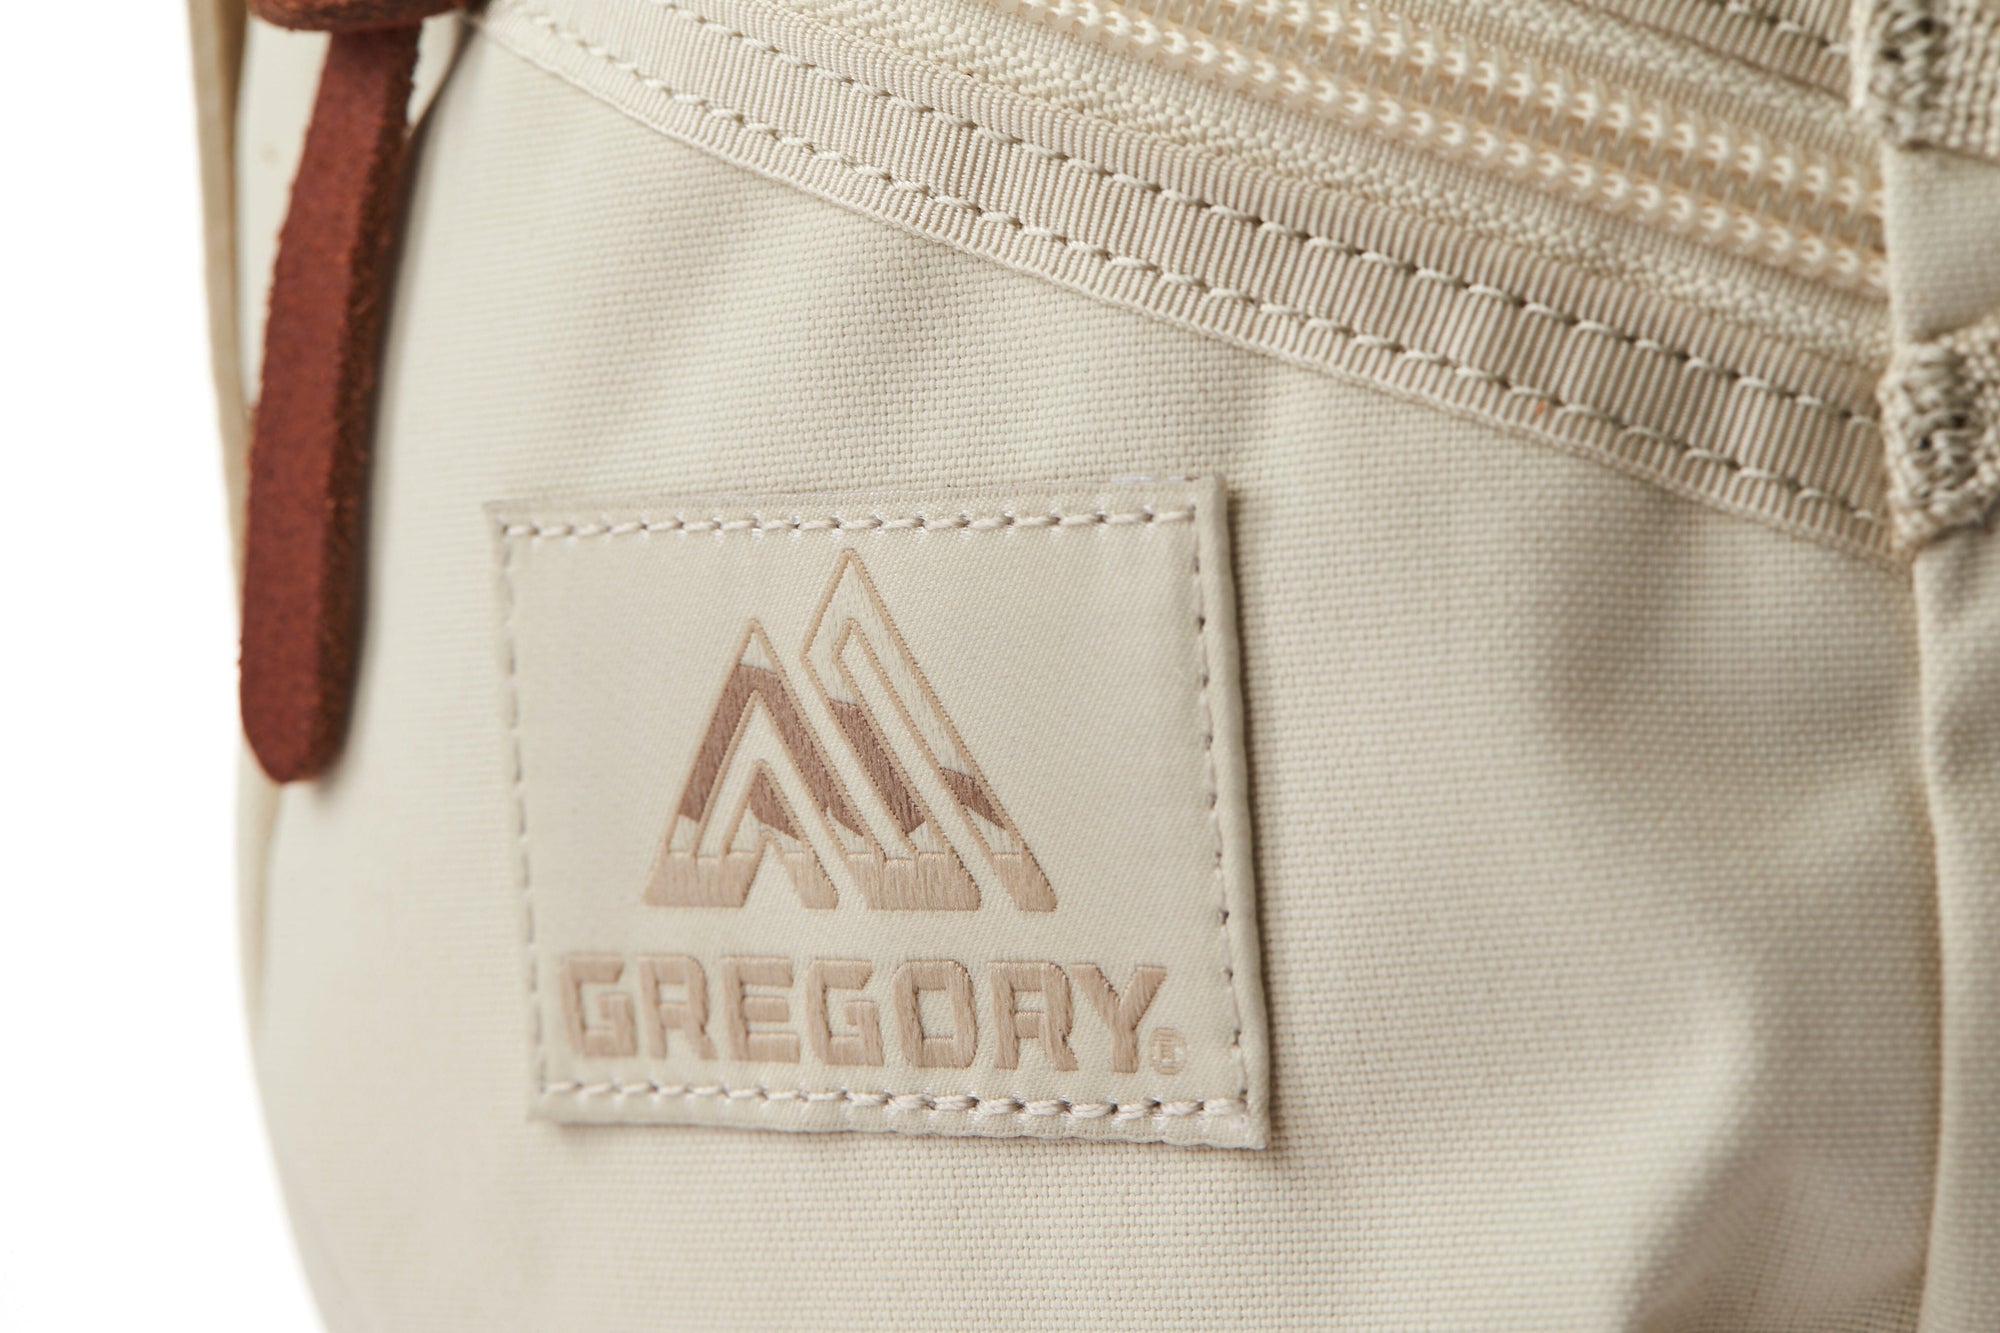 Gregory Ladybird 2Way Mini Backpack Backpack Pink 